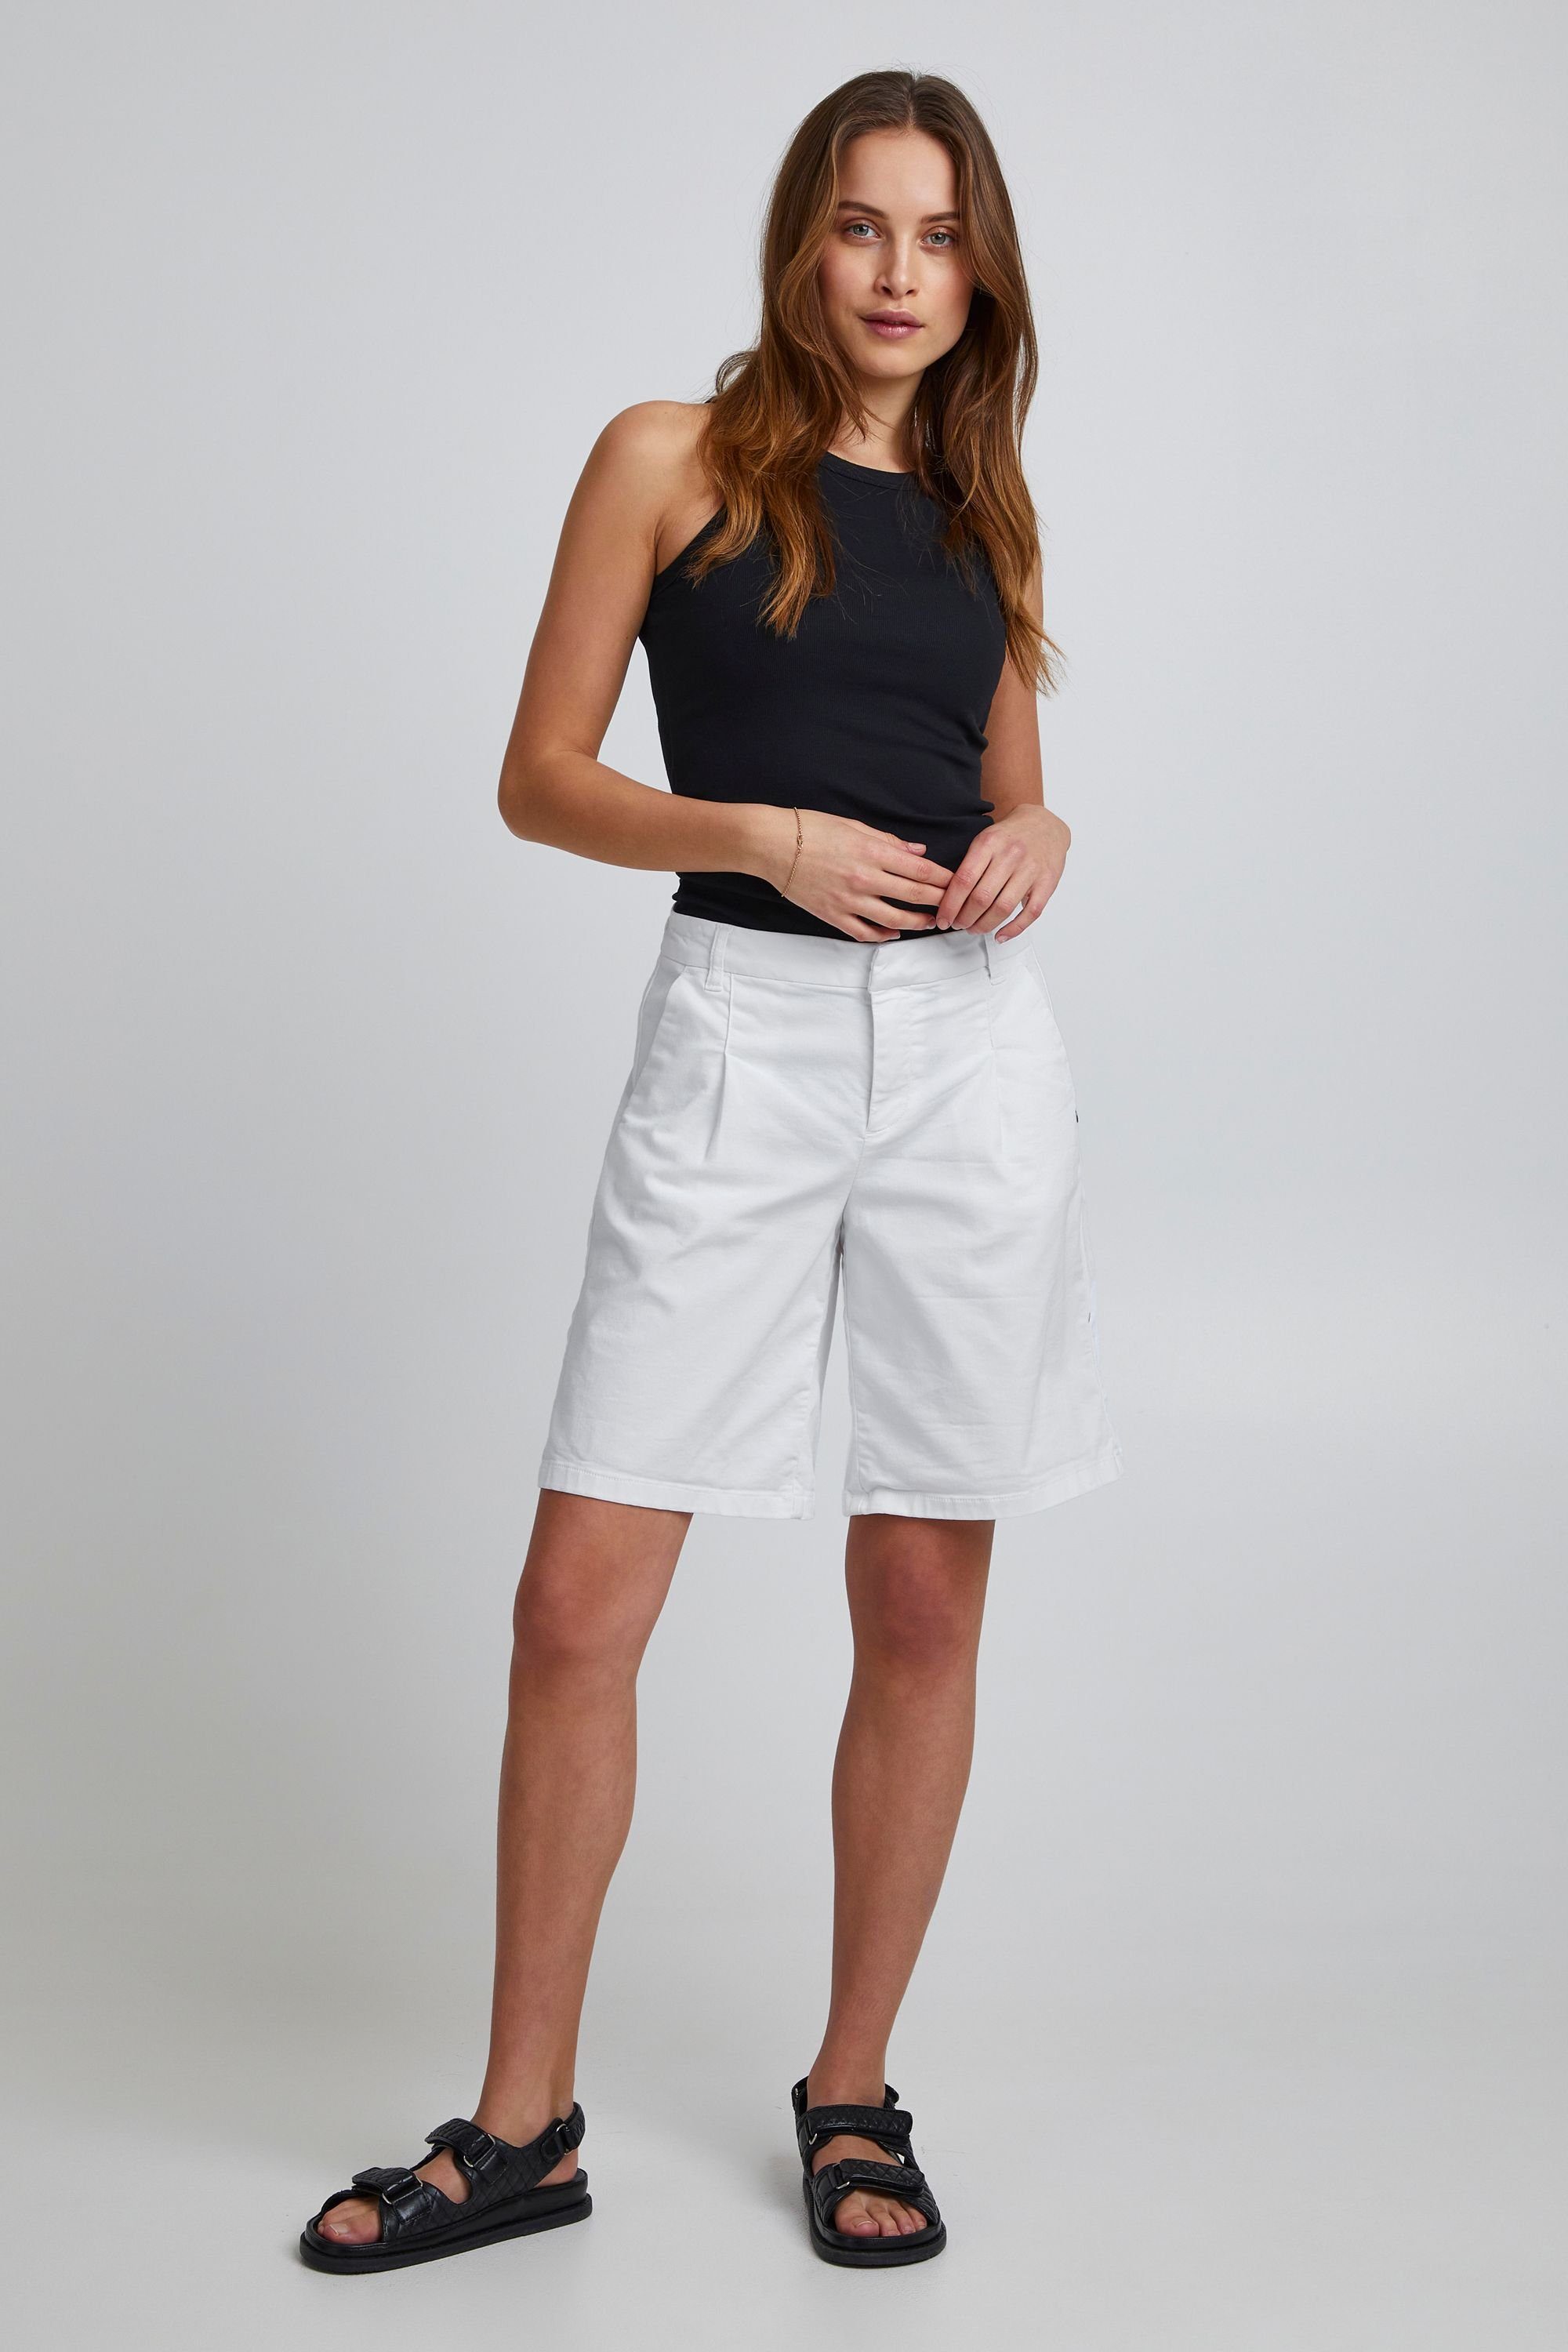 Shorts White Pulz Jeans - Bright (110601) PZROSITA 50206530